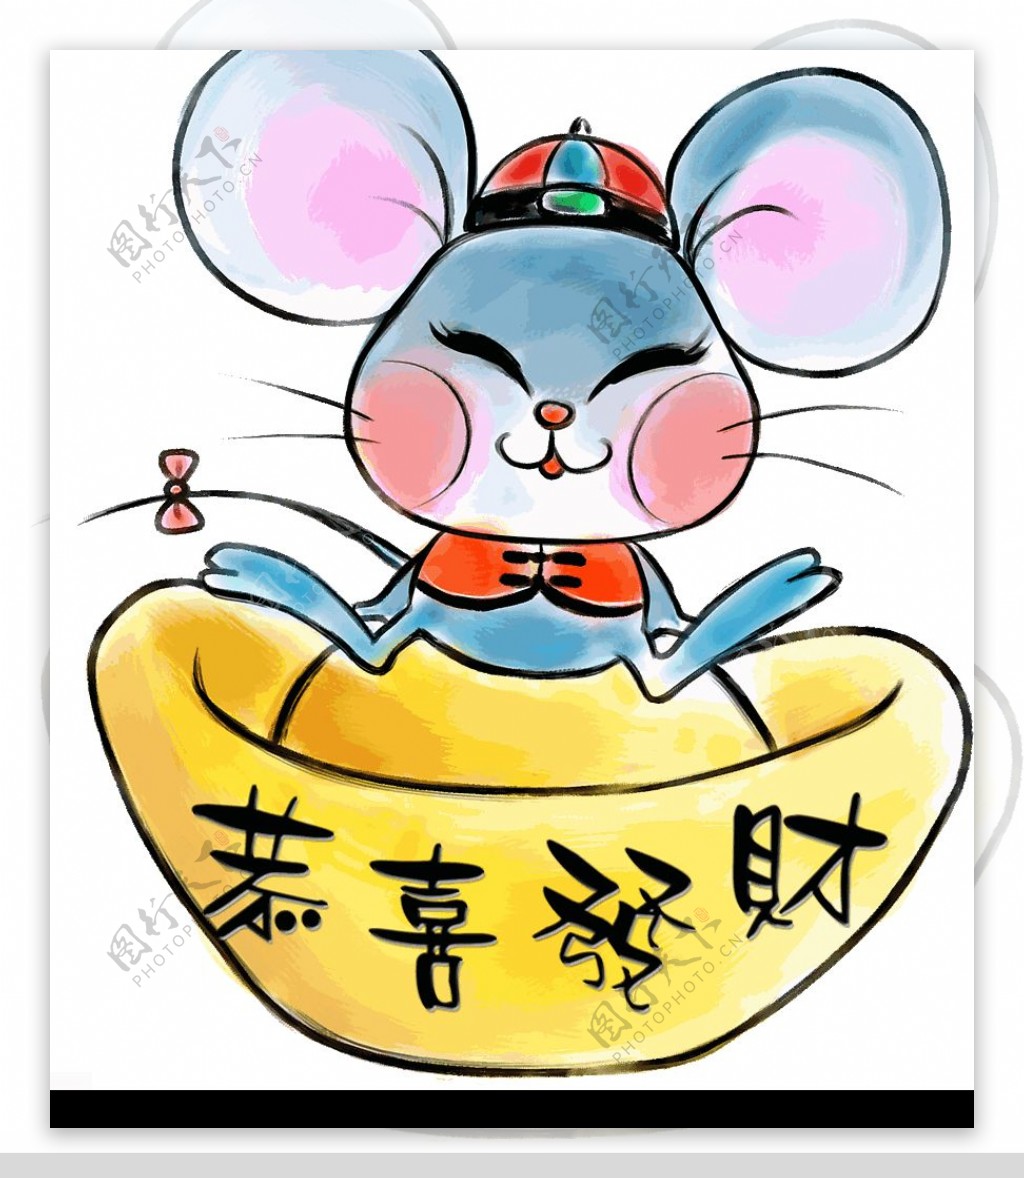 中国水墨画12生肖鼠图片